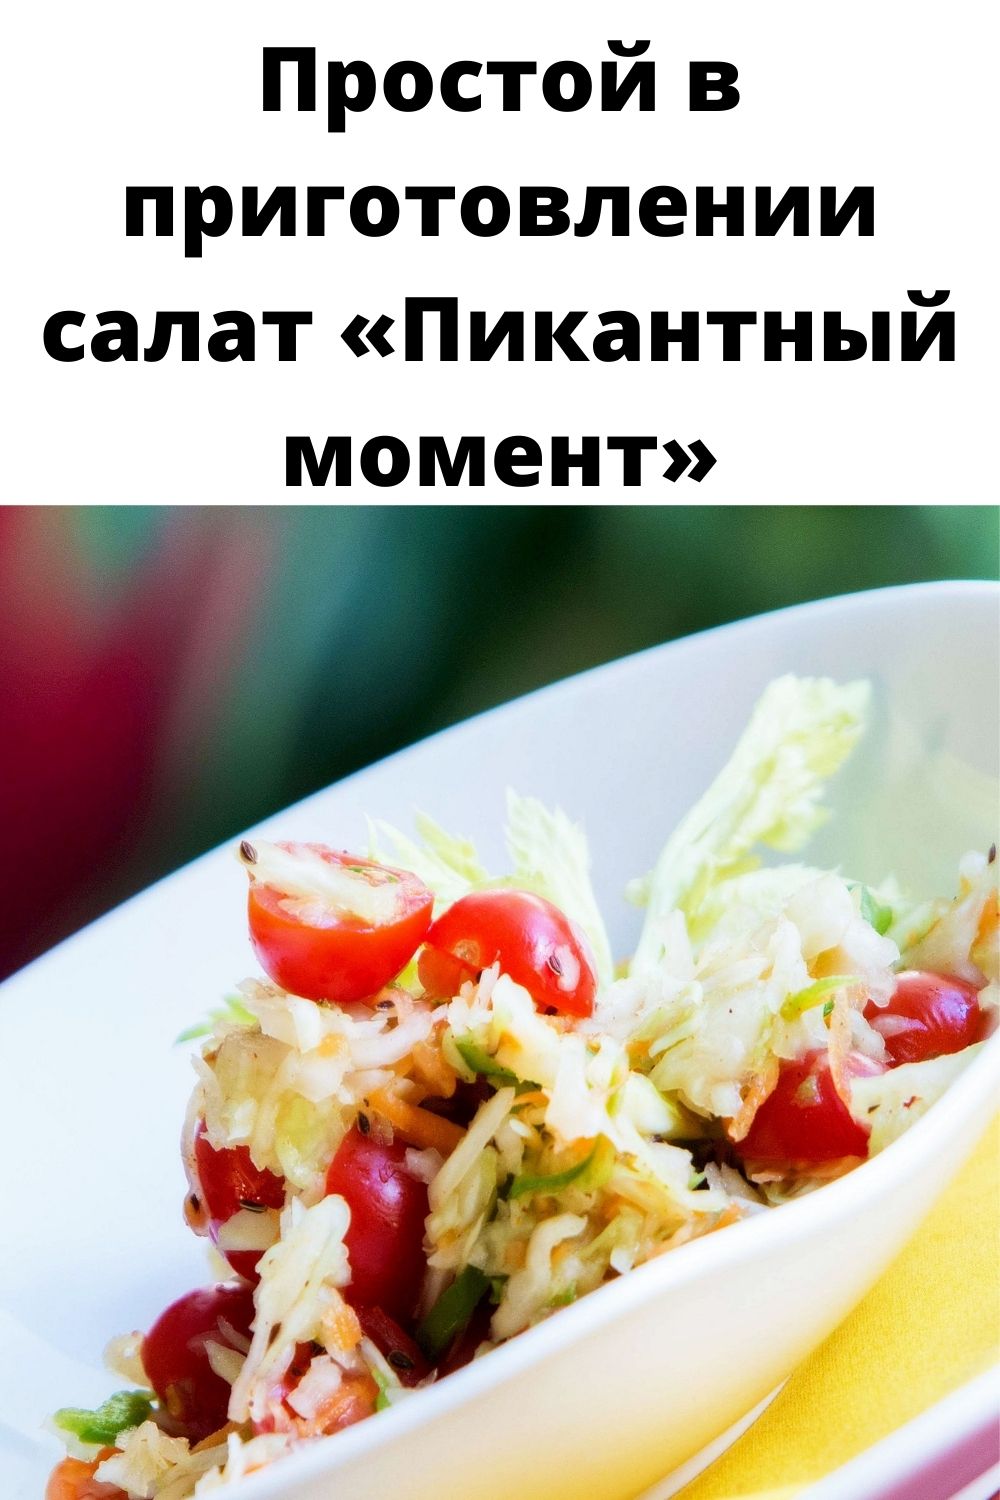 Простой в приготовлении салат «Пикантный момент»